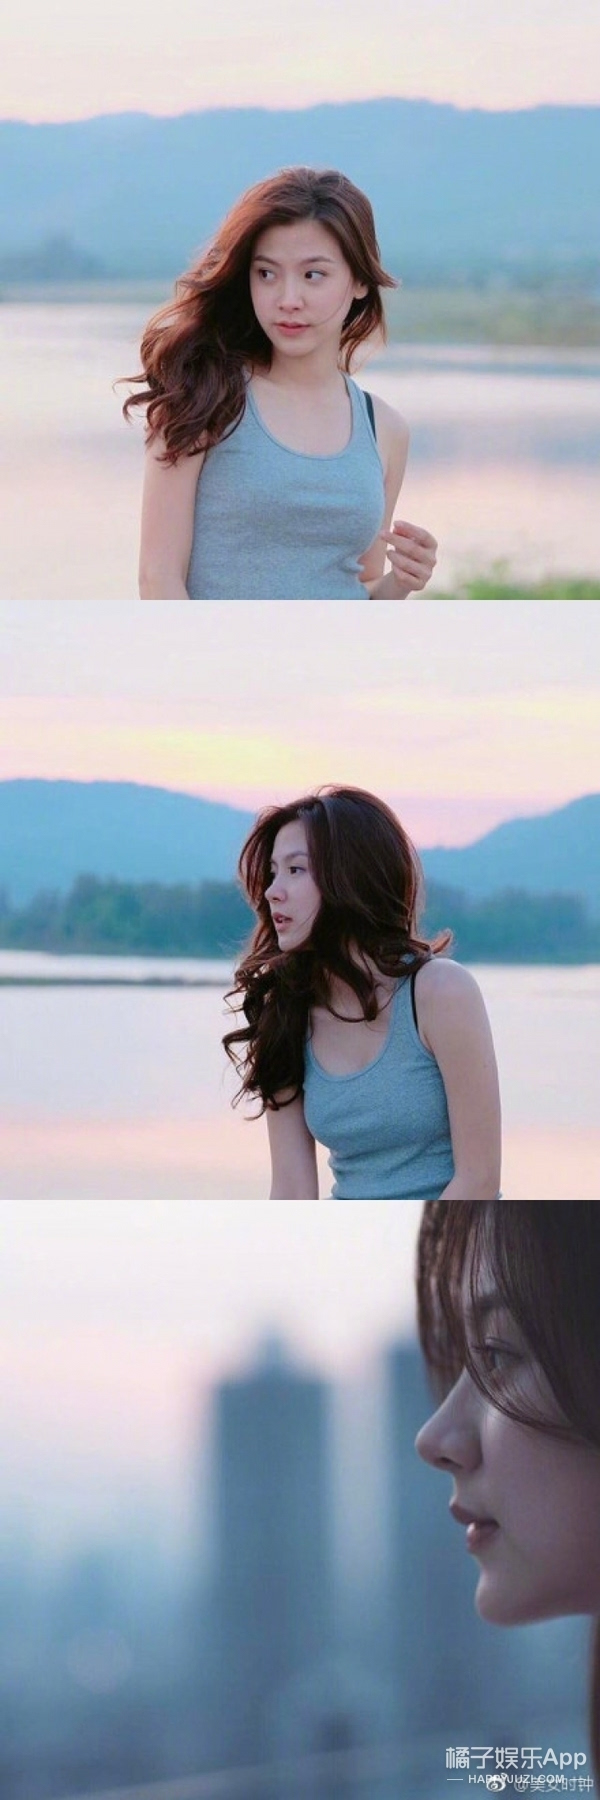 饰演小水的是泰国演员平采娜·乐维瑟派布恩.